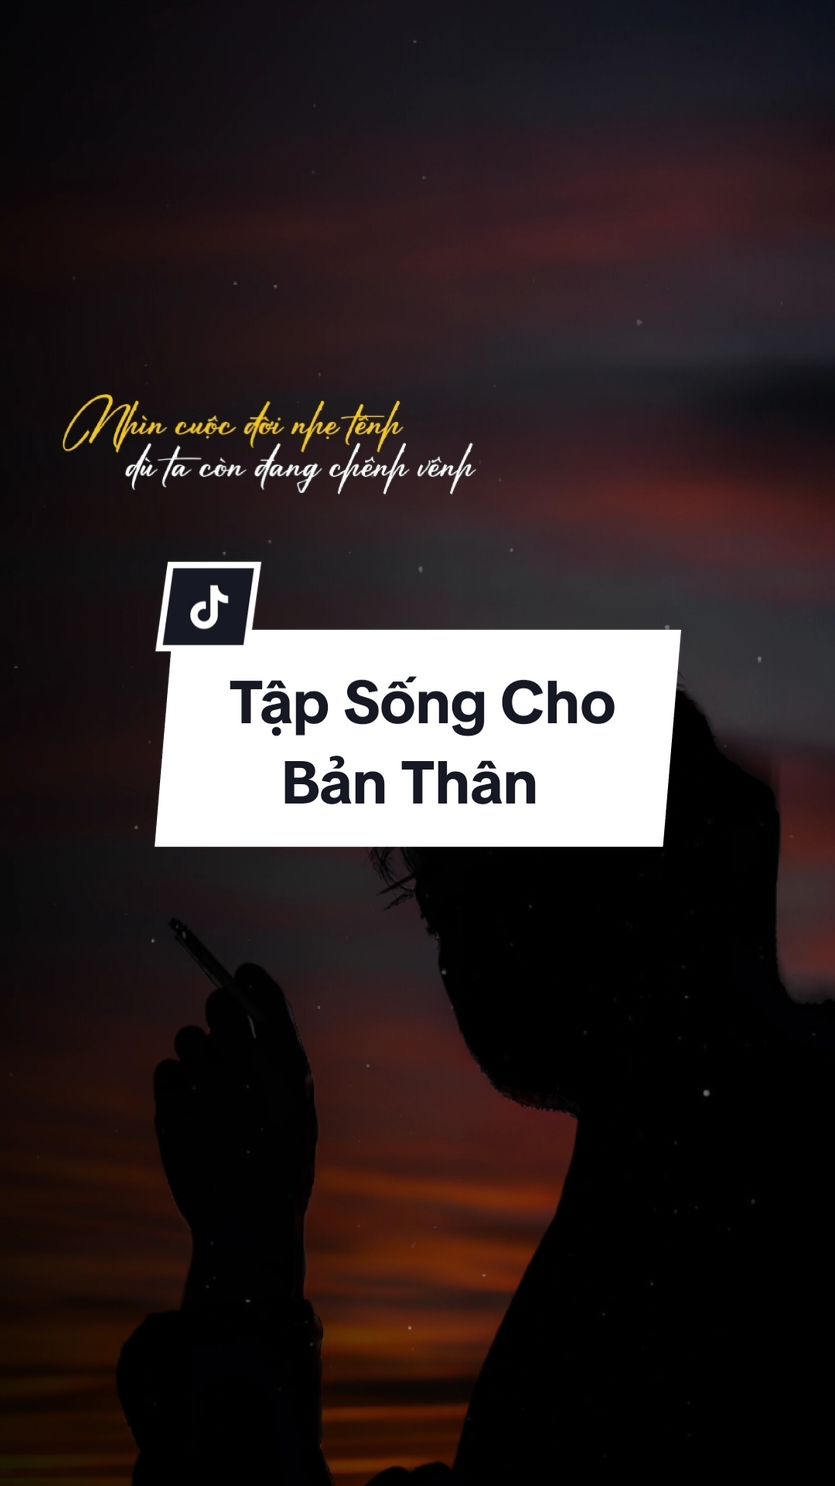 Tập sống cho bản thân || Oanh Tạ #tapsongchobanthan #oanhta #thientu #nhactinhsaulang #nhaclyrics102 @𝙉𝙃𝘼𝘾𝙇𝙔𝙍𝙄𝘾𝙎 @Nguyen Ngo Hong Tham @🍀 PT MH 🍀 